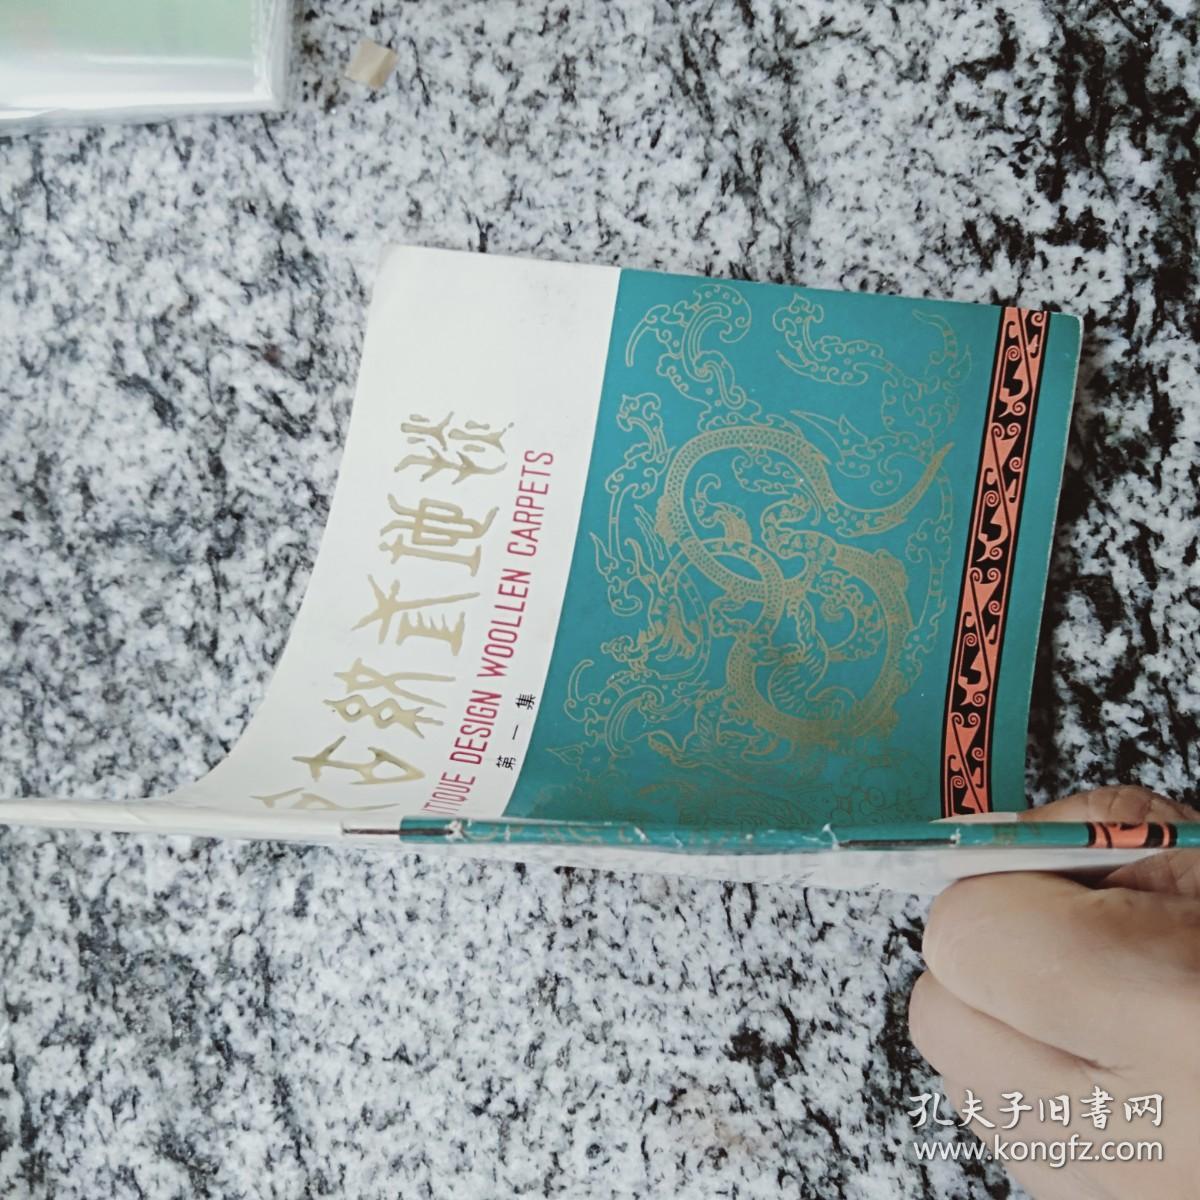 北京古纹式地毯  第一集